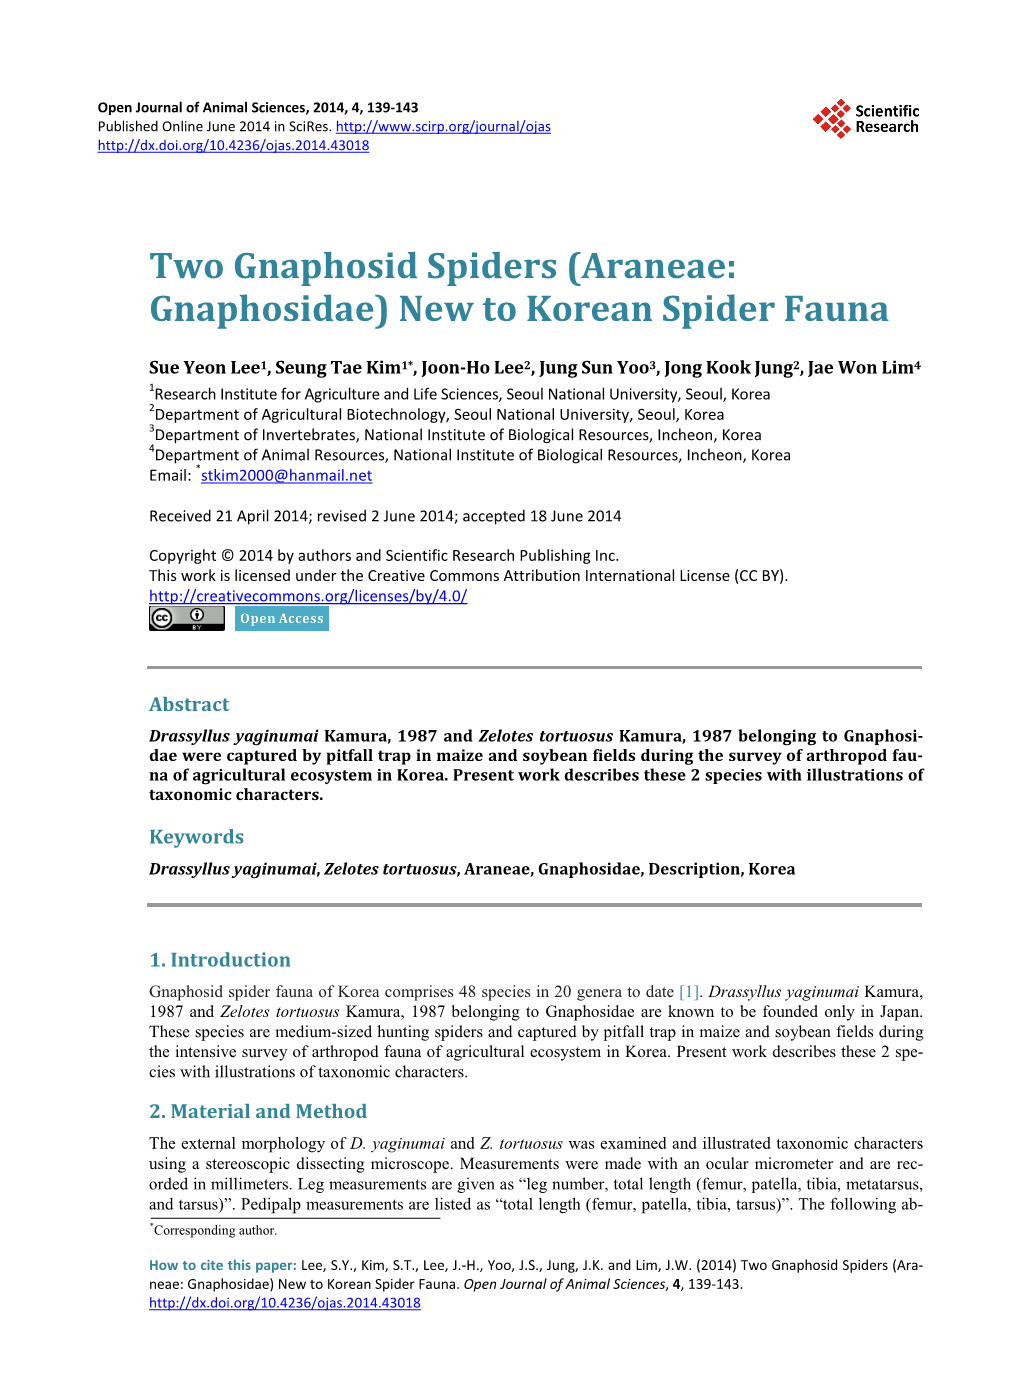 Araneae: Gnaphosidae) New to Korean Spider Fauna